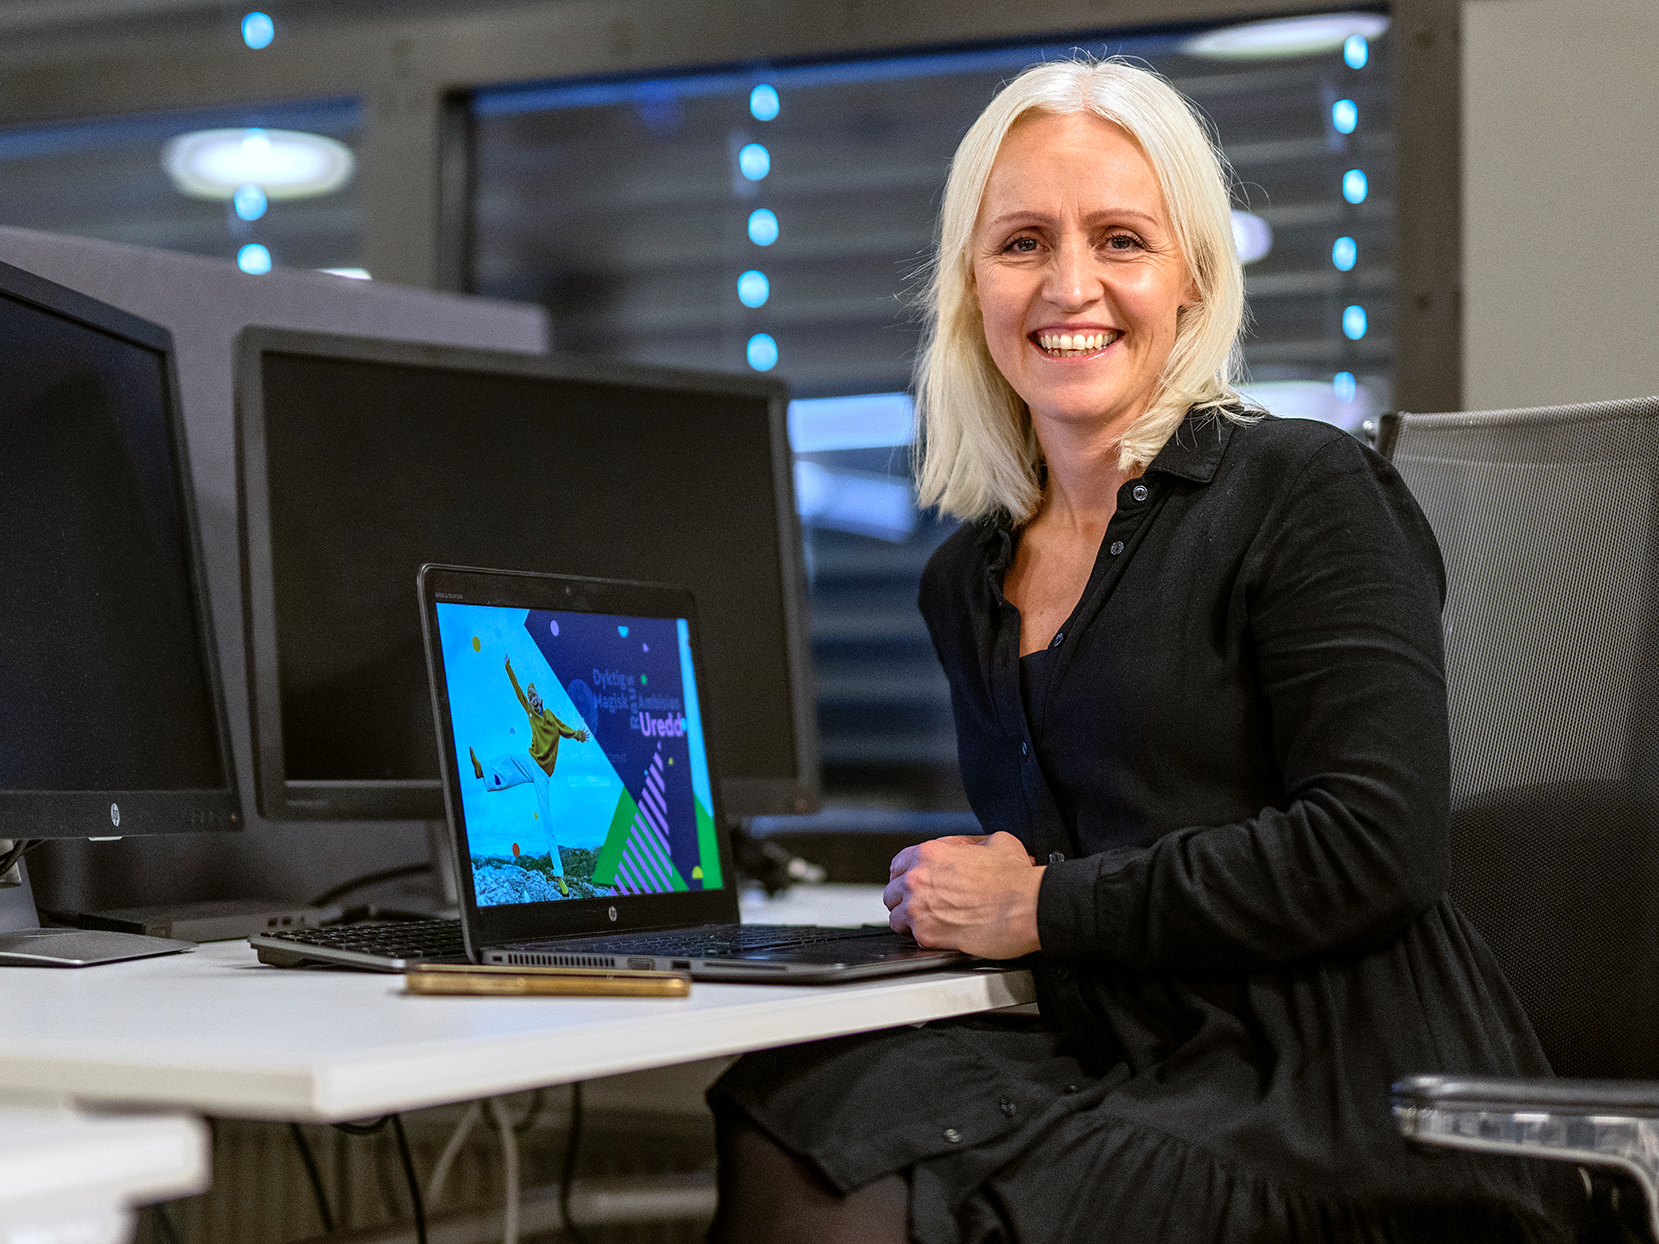 Ingrid Rotherud Mathisen sitter i en sort kjole foran en kontorpult med laptop.